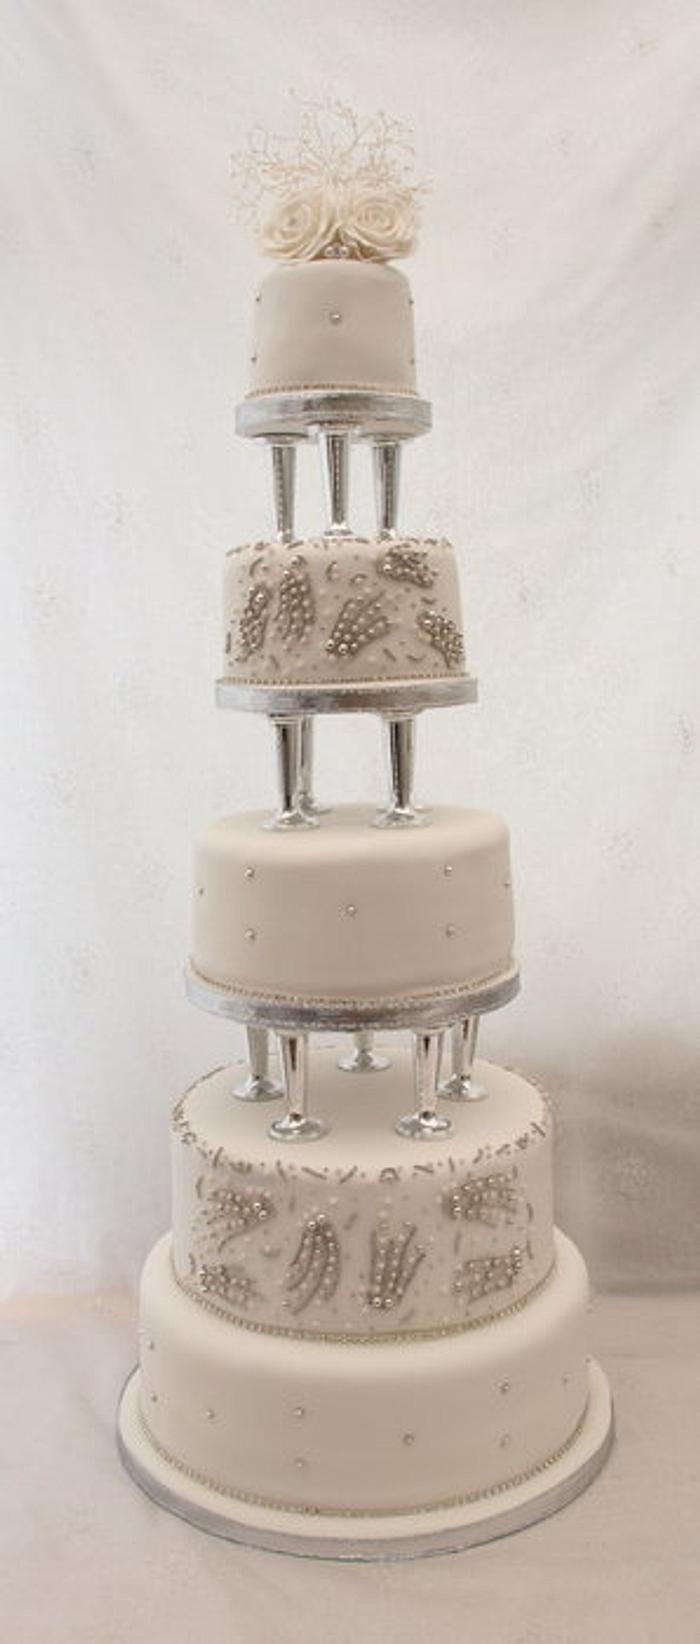 3ft high bling wedding cake!